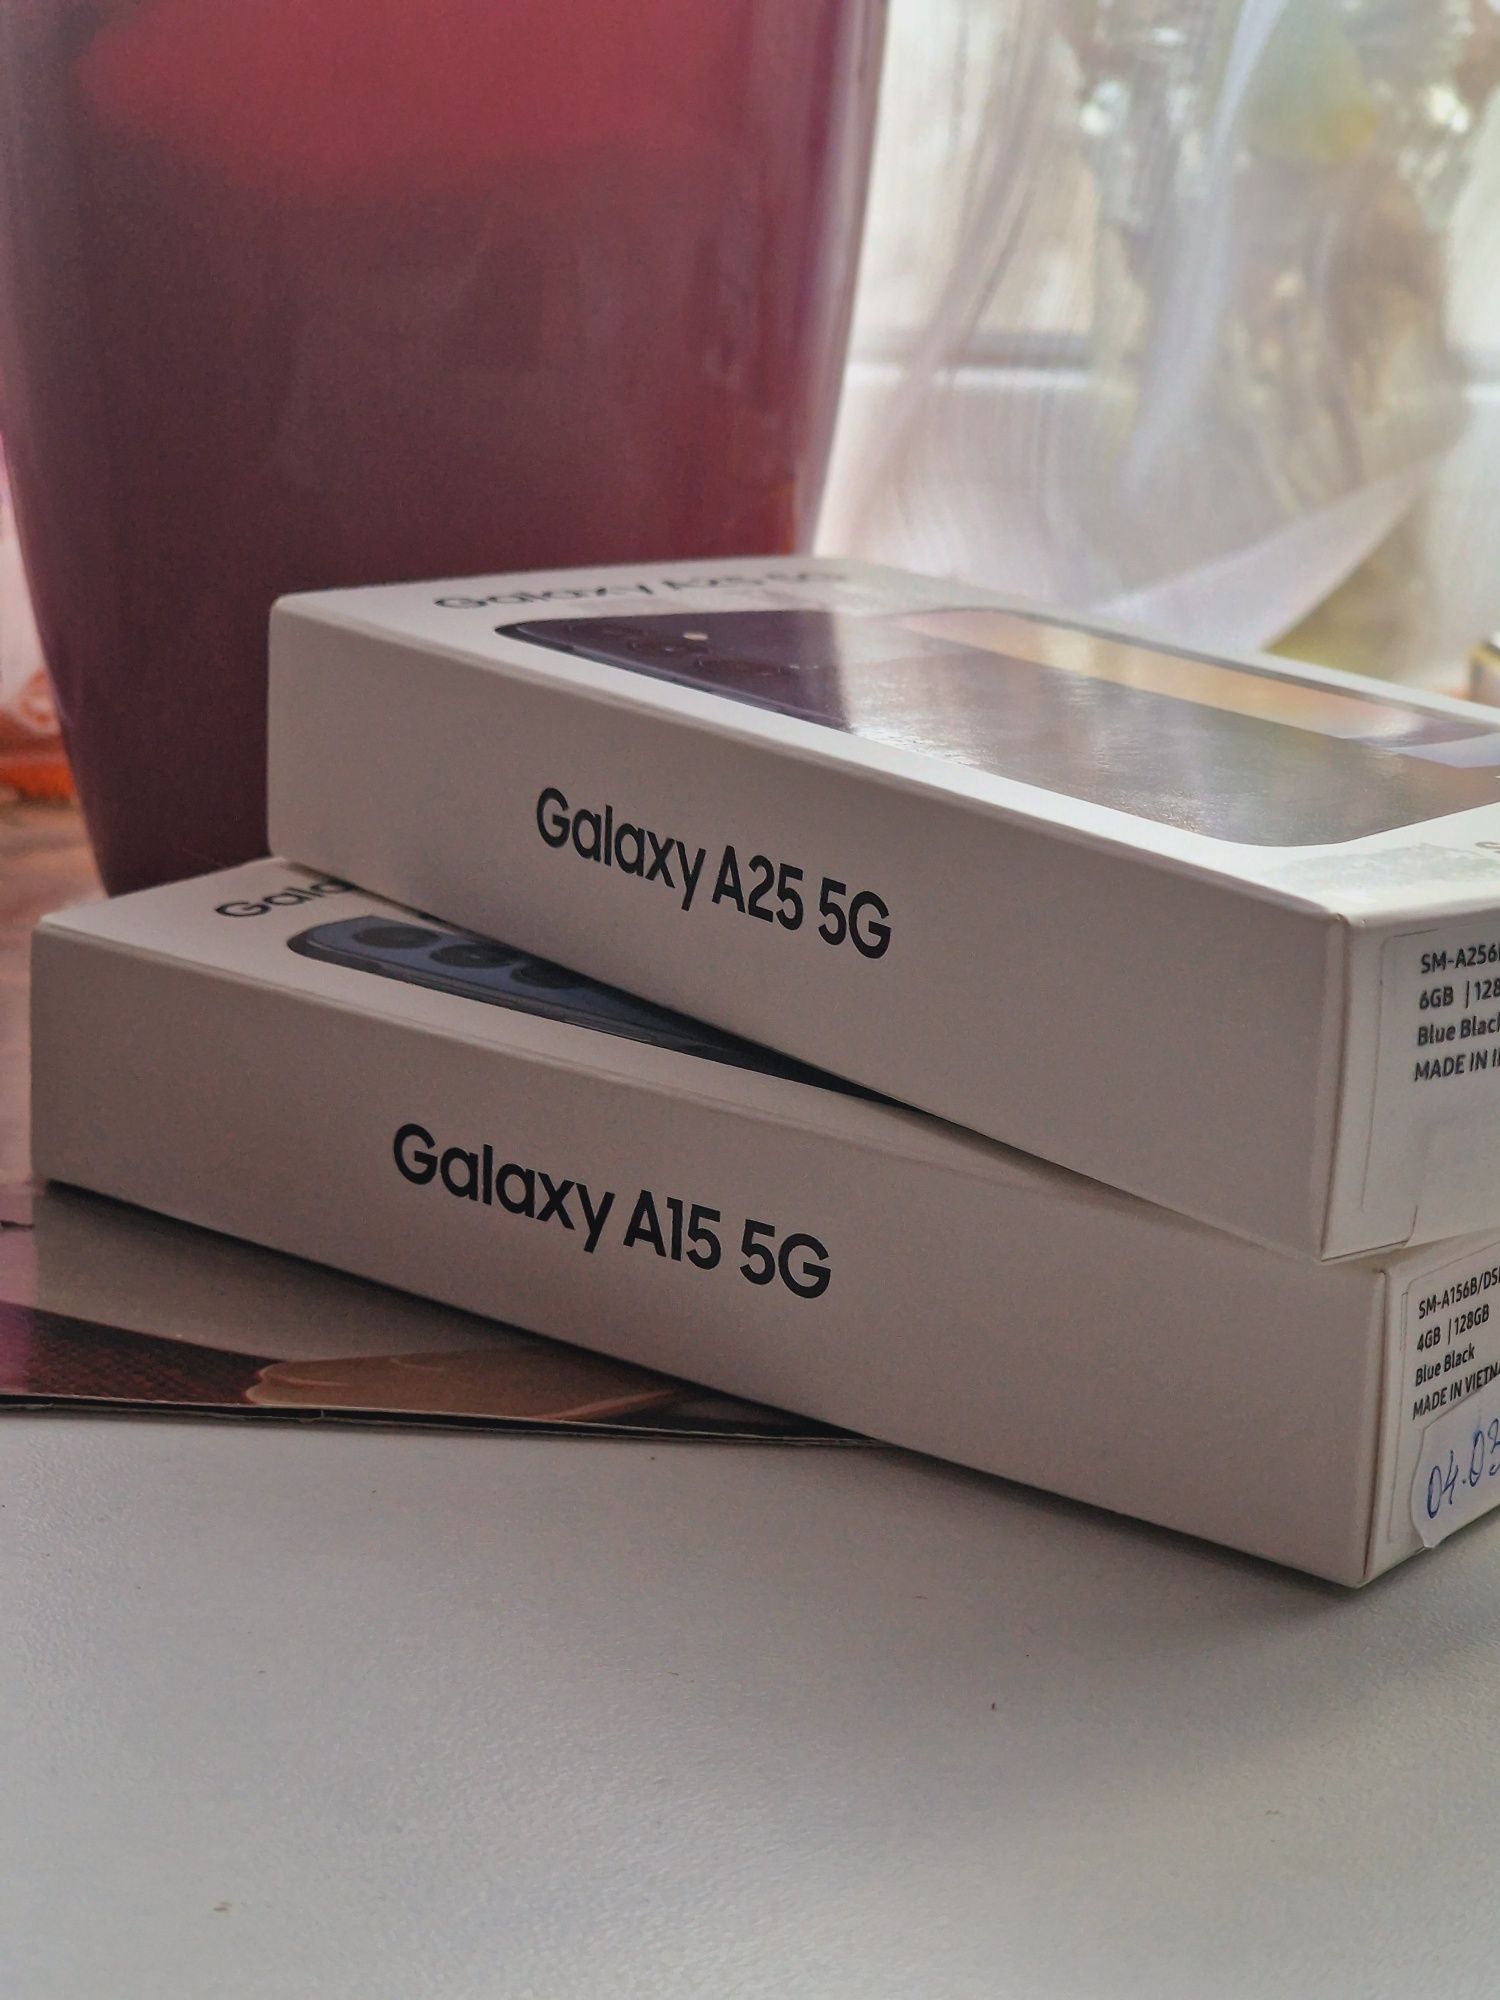 ‼️ Samsung Galaxy A25 / A15 5G, 128 GB NOI ‼️